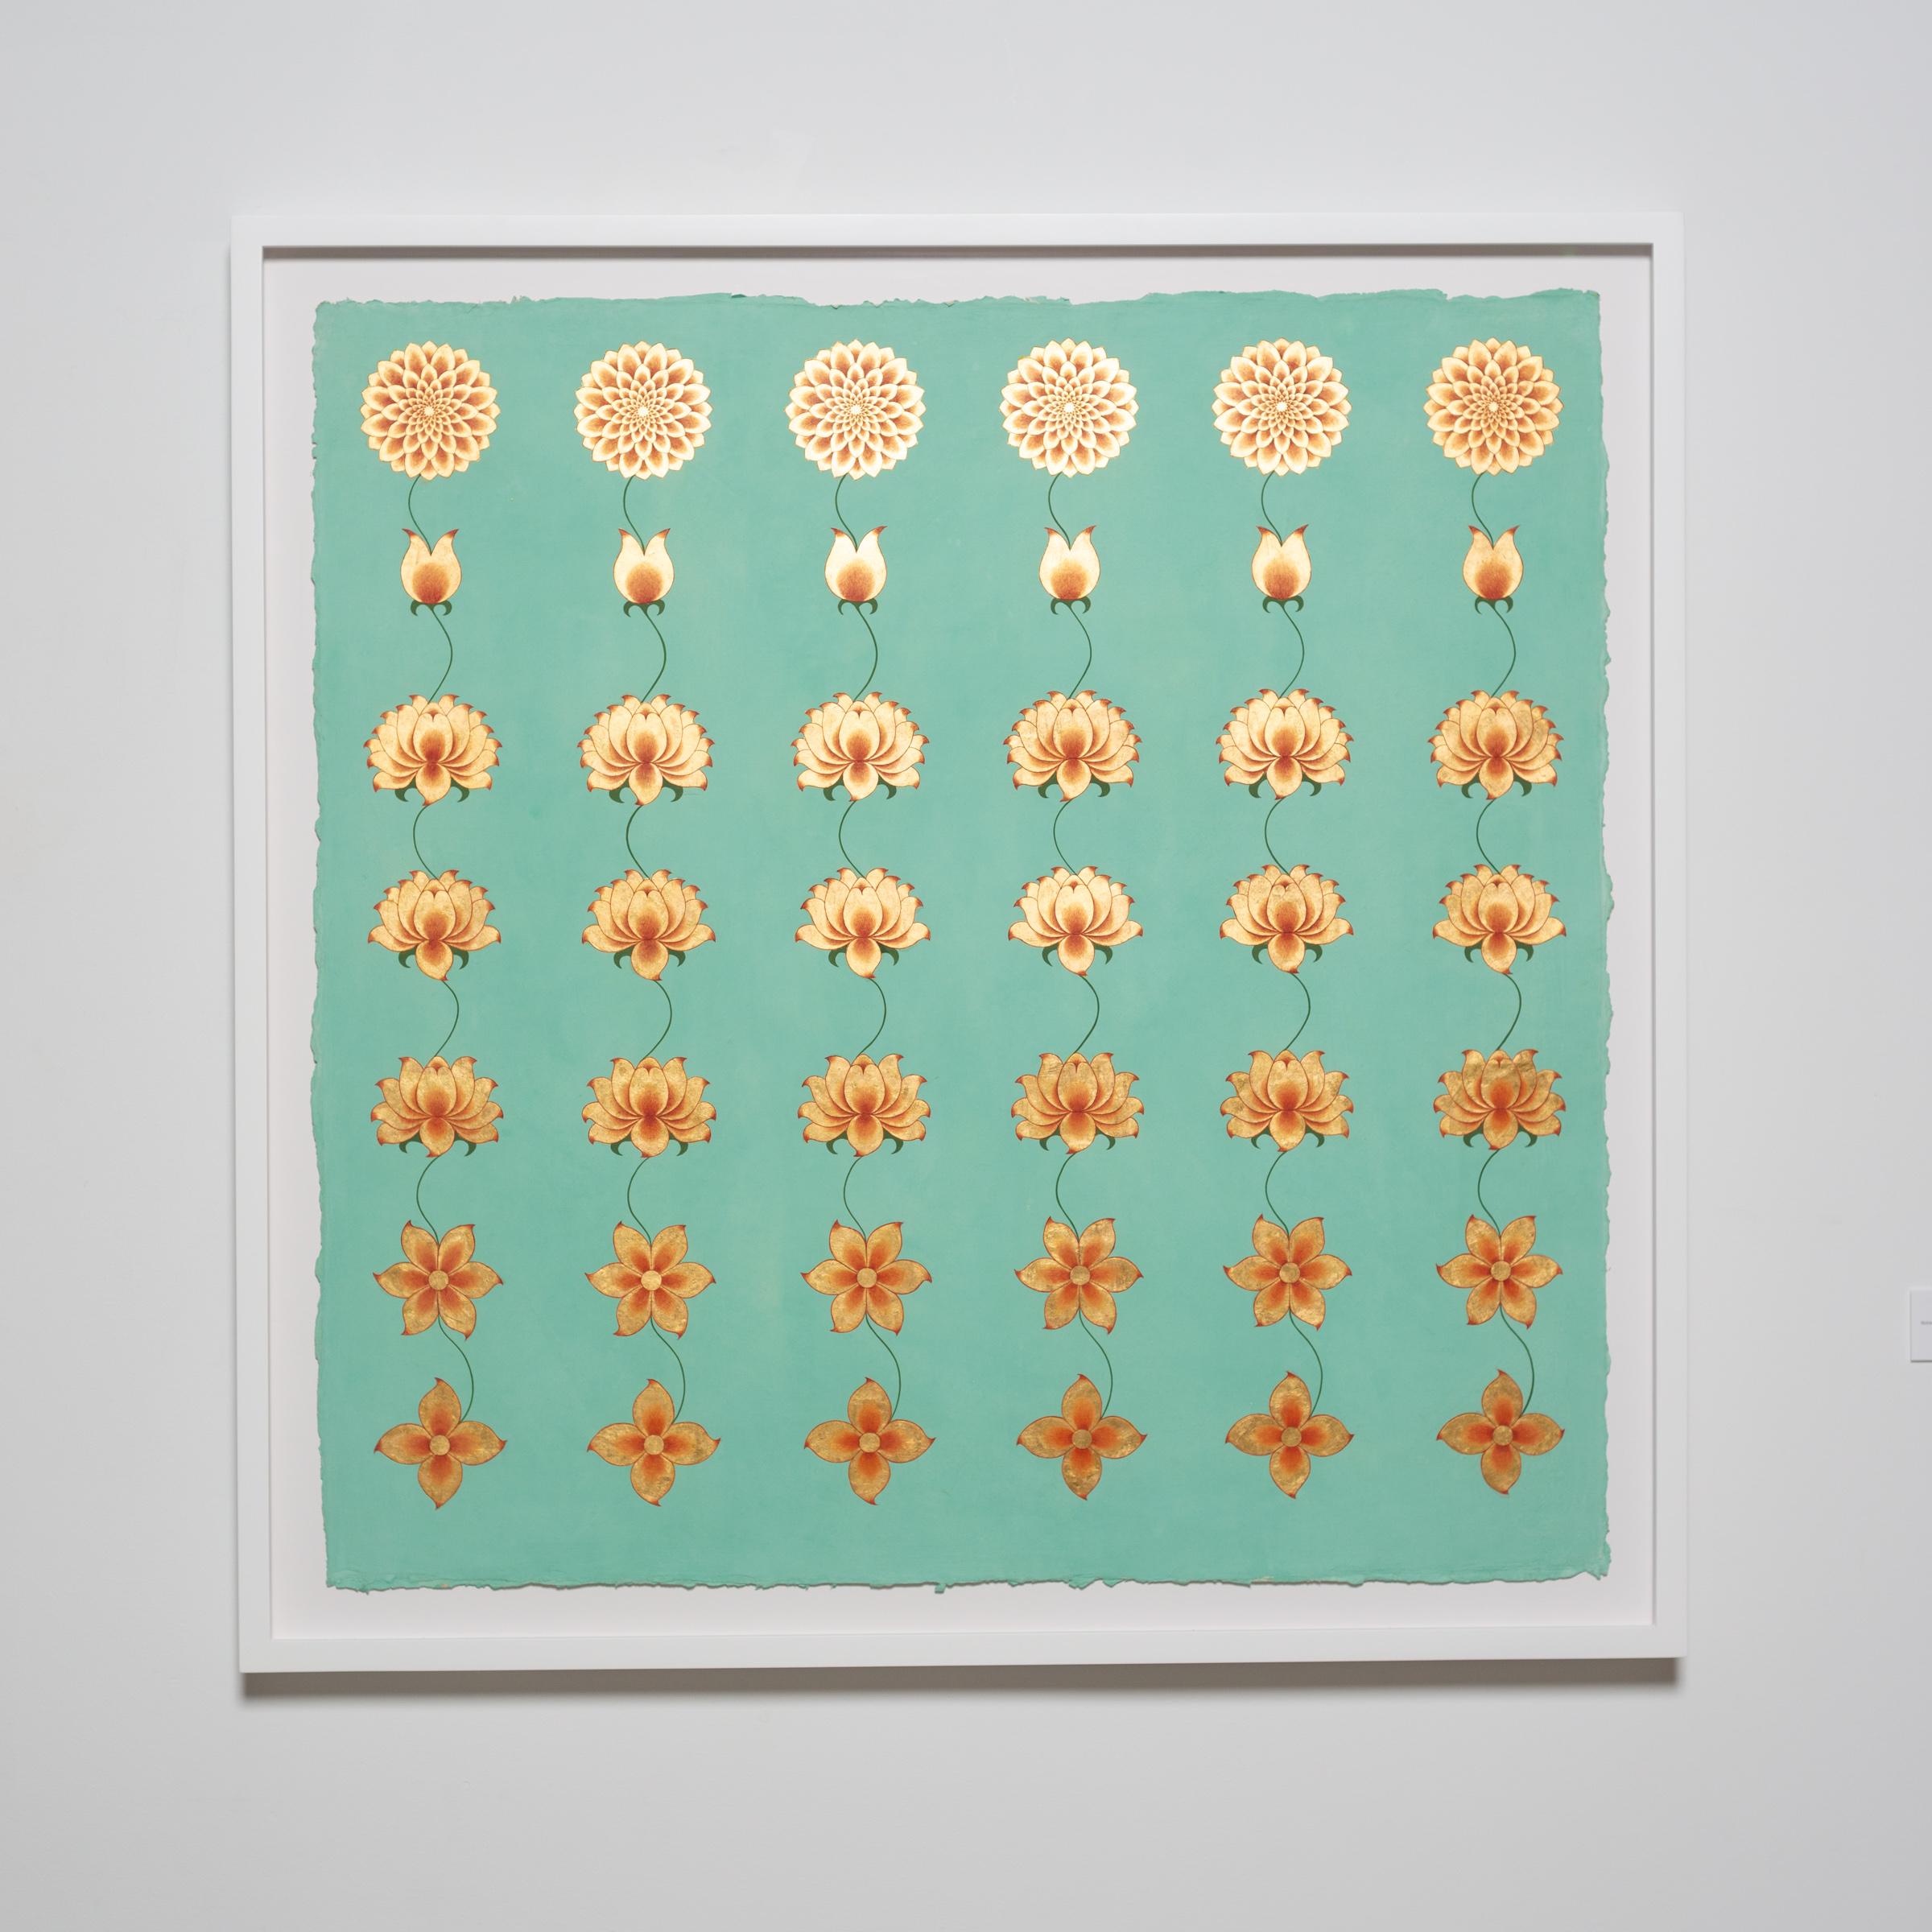 Olivia Fraser
Prana, 2022
Pigment de pierre, gomme arabique et plomb doré sur papier fait main
36 x 36 pouces
91.44 x 91.44 cm
OF042

Olivia Fraser (née en 1965 à Londres) est une artiste basée à Delhi, connue pour ses peintures incorporant des